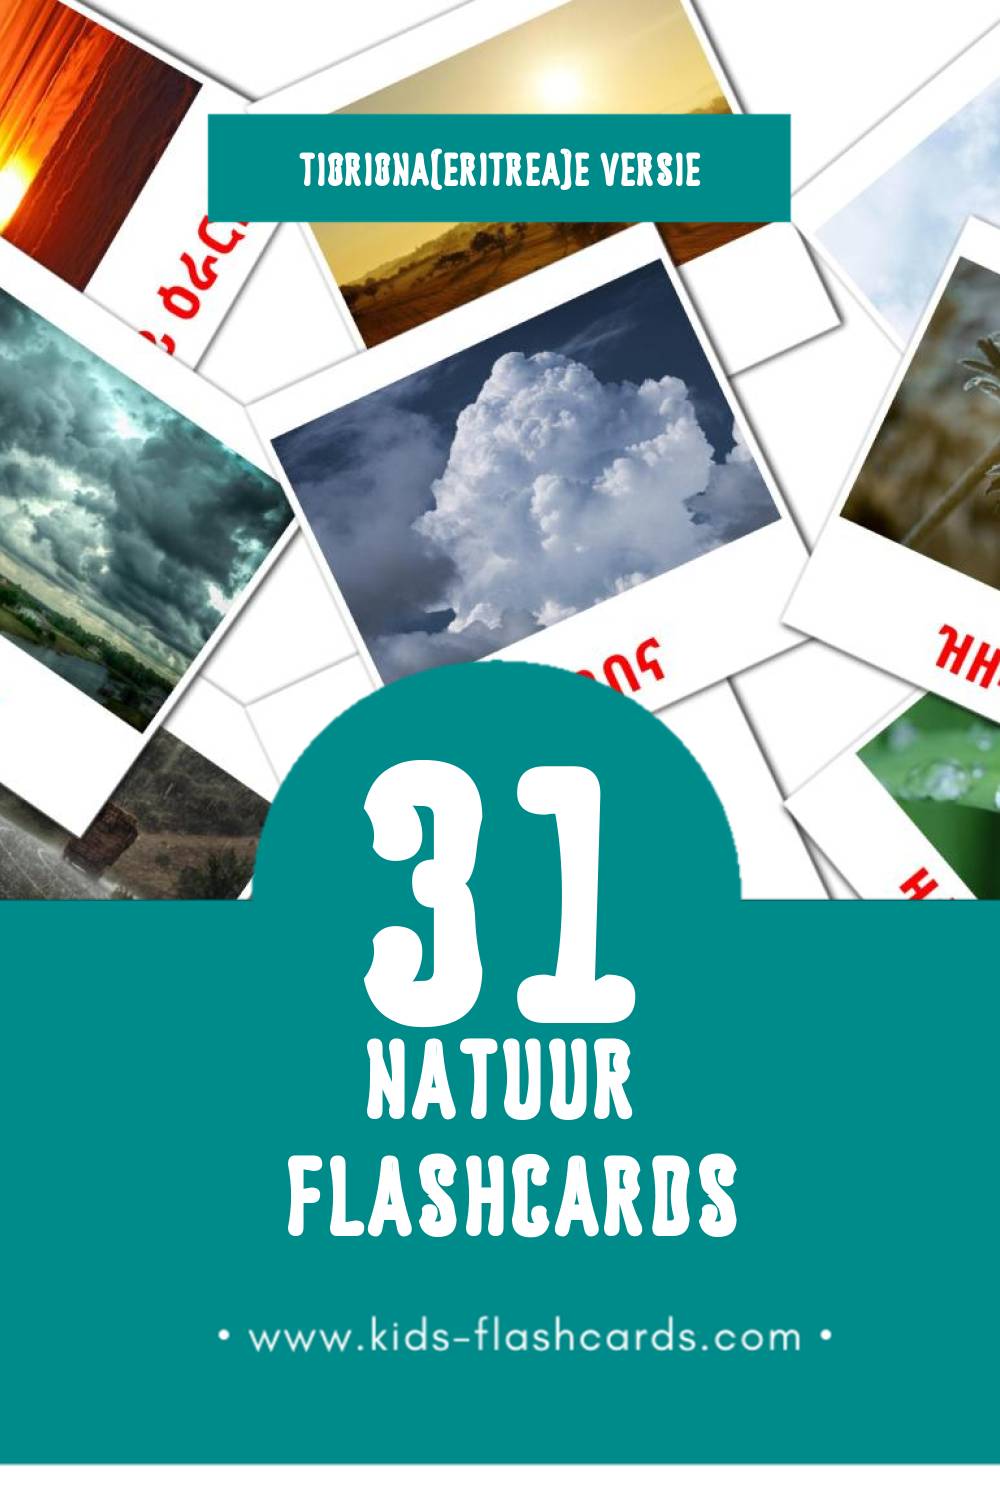 Visuele ተፈጥሮ Flashcards voor Kleuters (31 kaarten in het Tigrigna(eritrea))